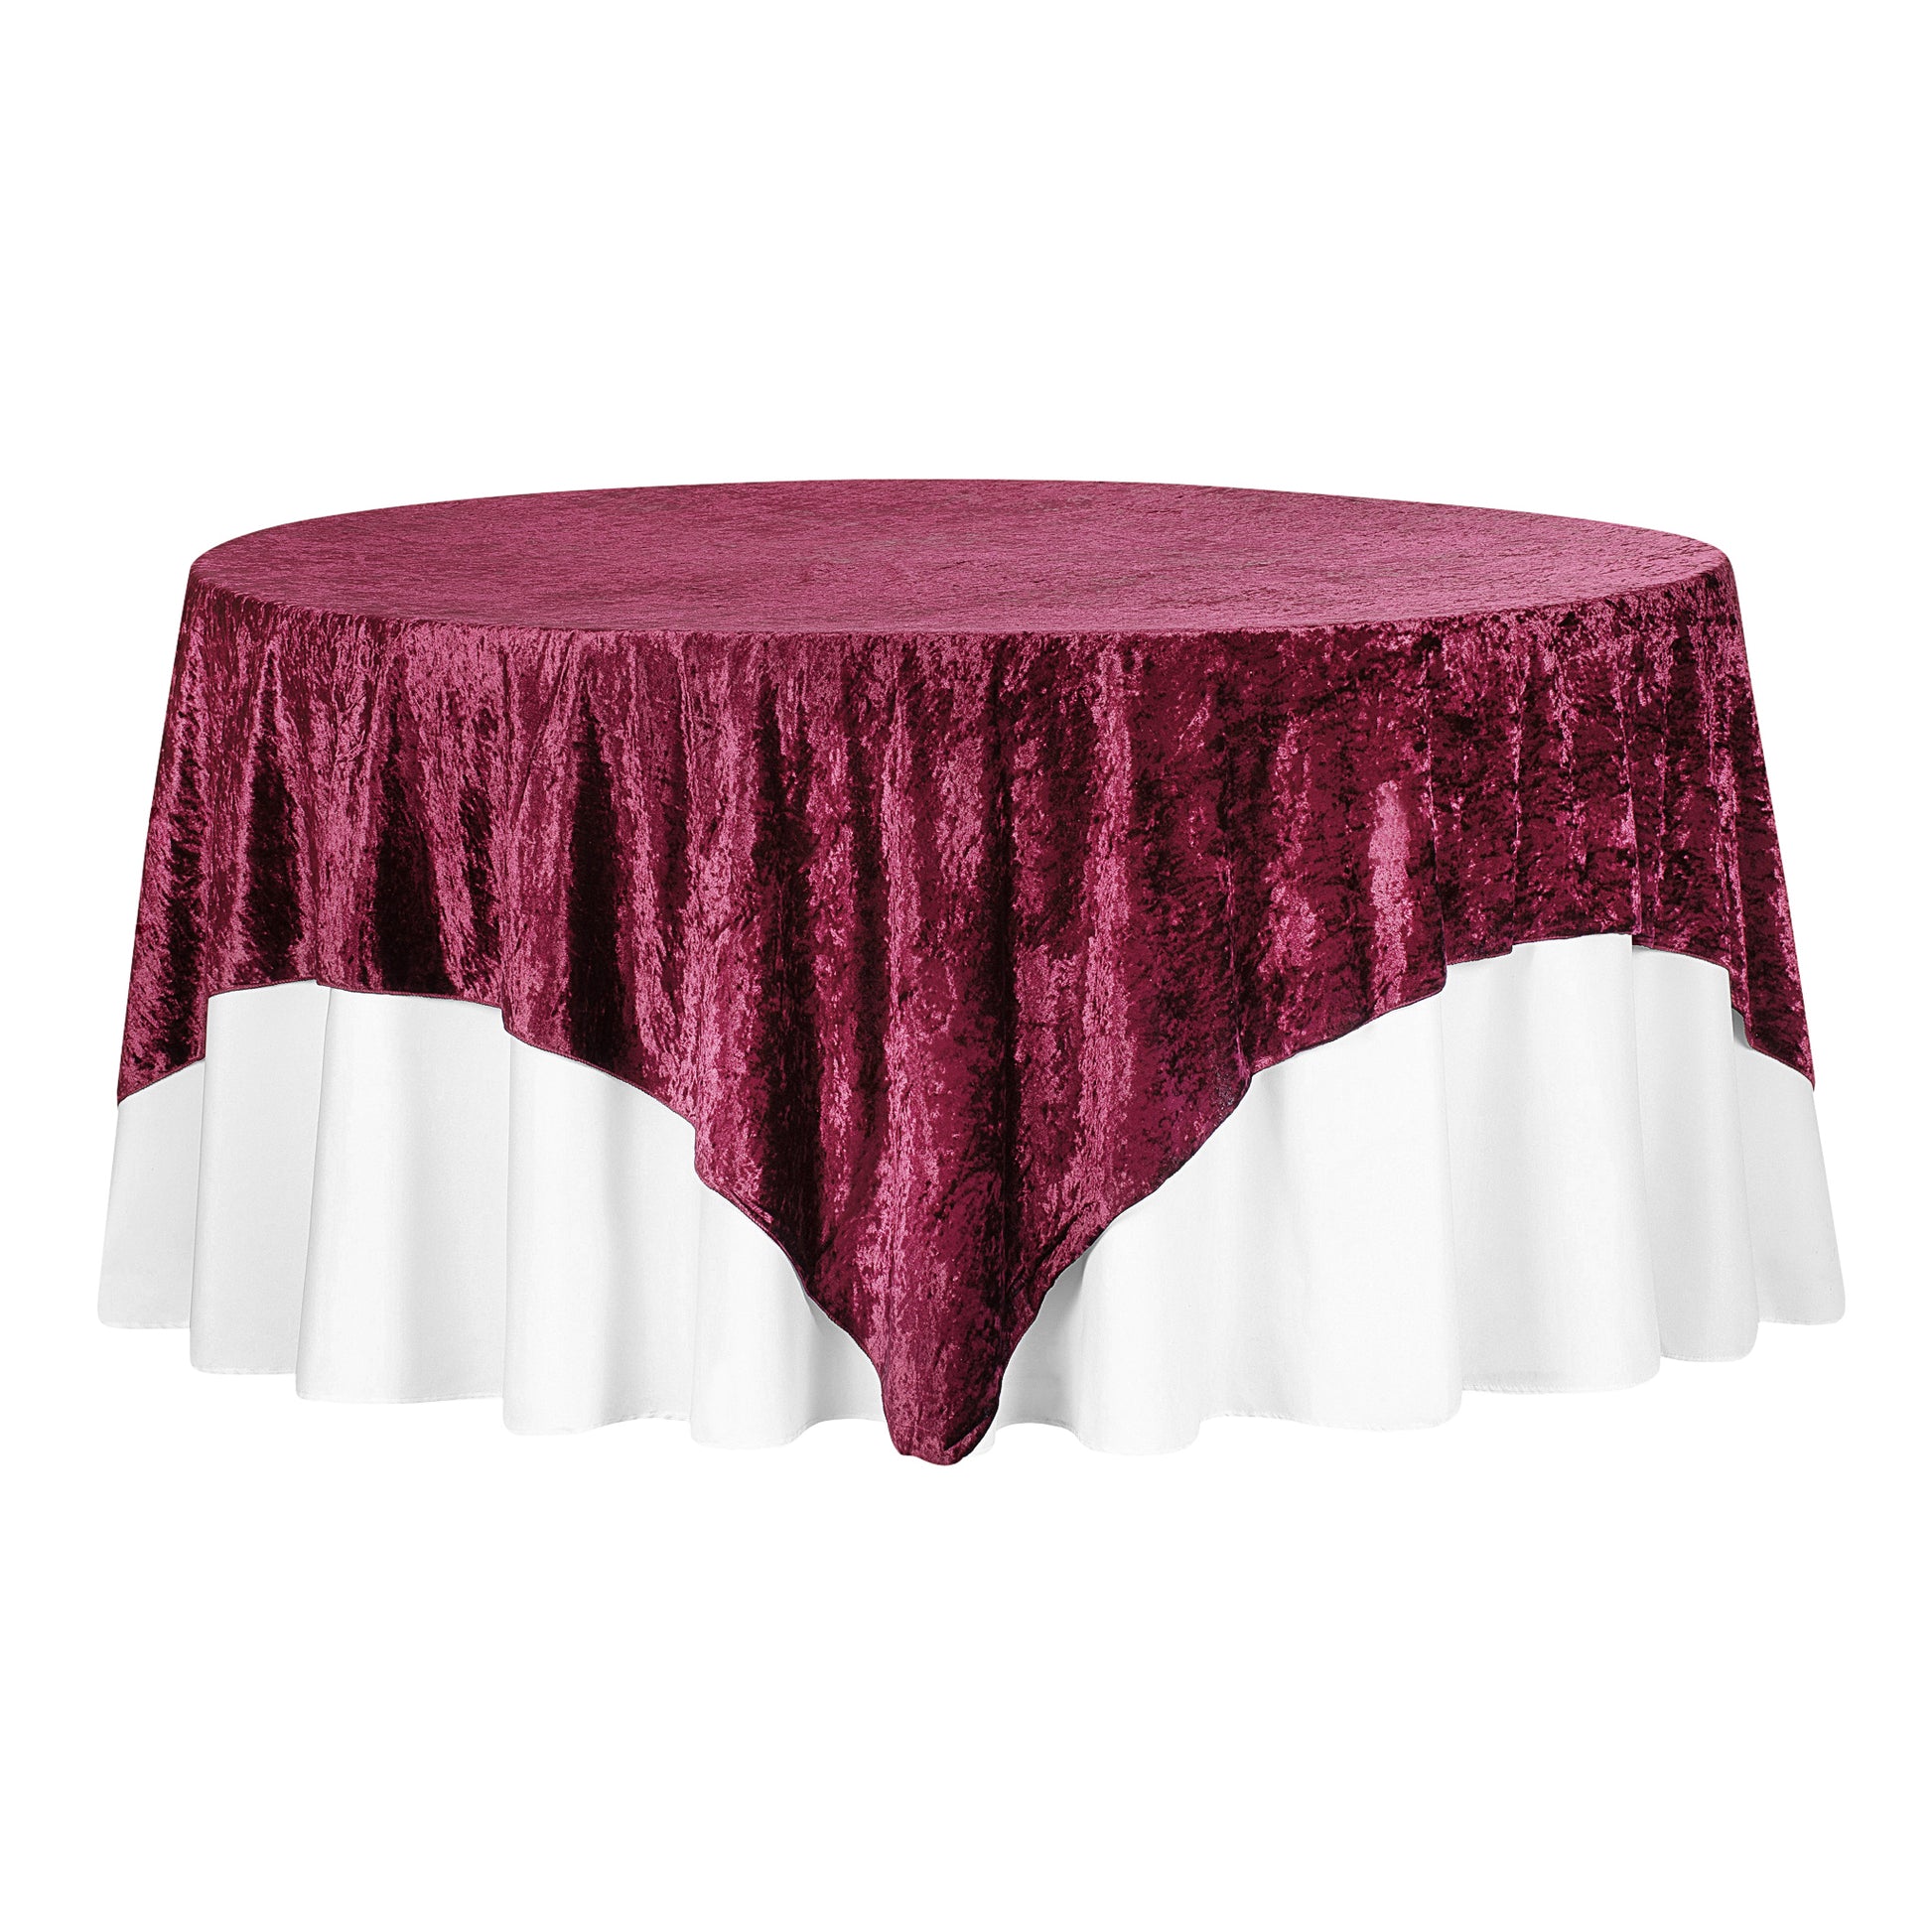 Velvet 85"x85" Square Tablecloth Table Overlay - Burgundy - CV Linens